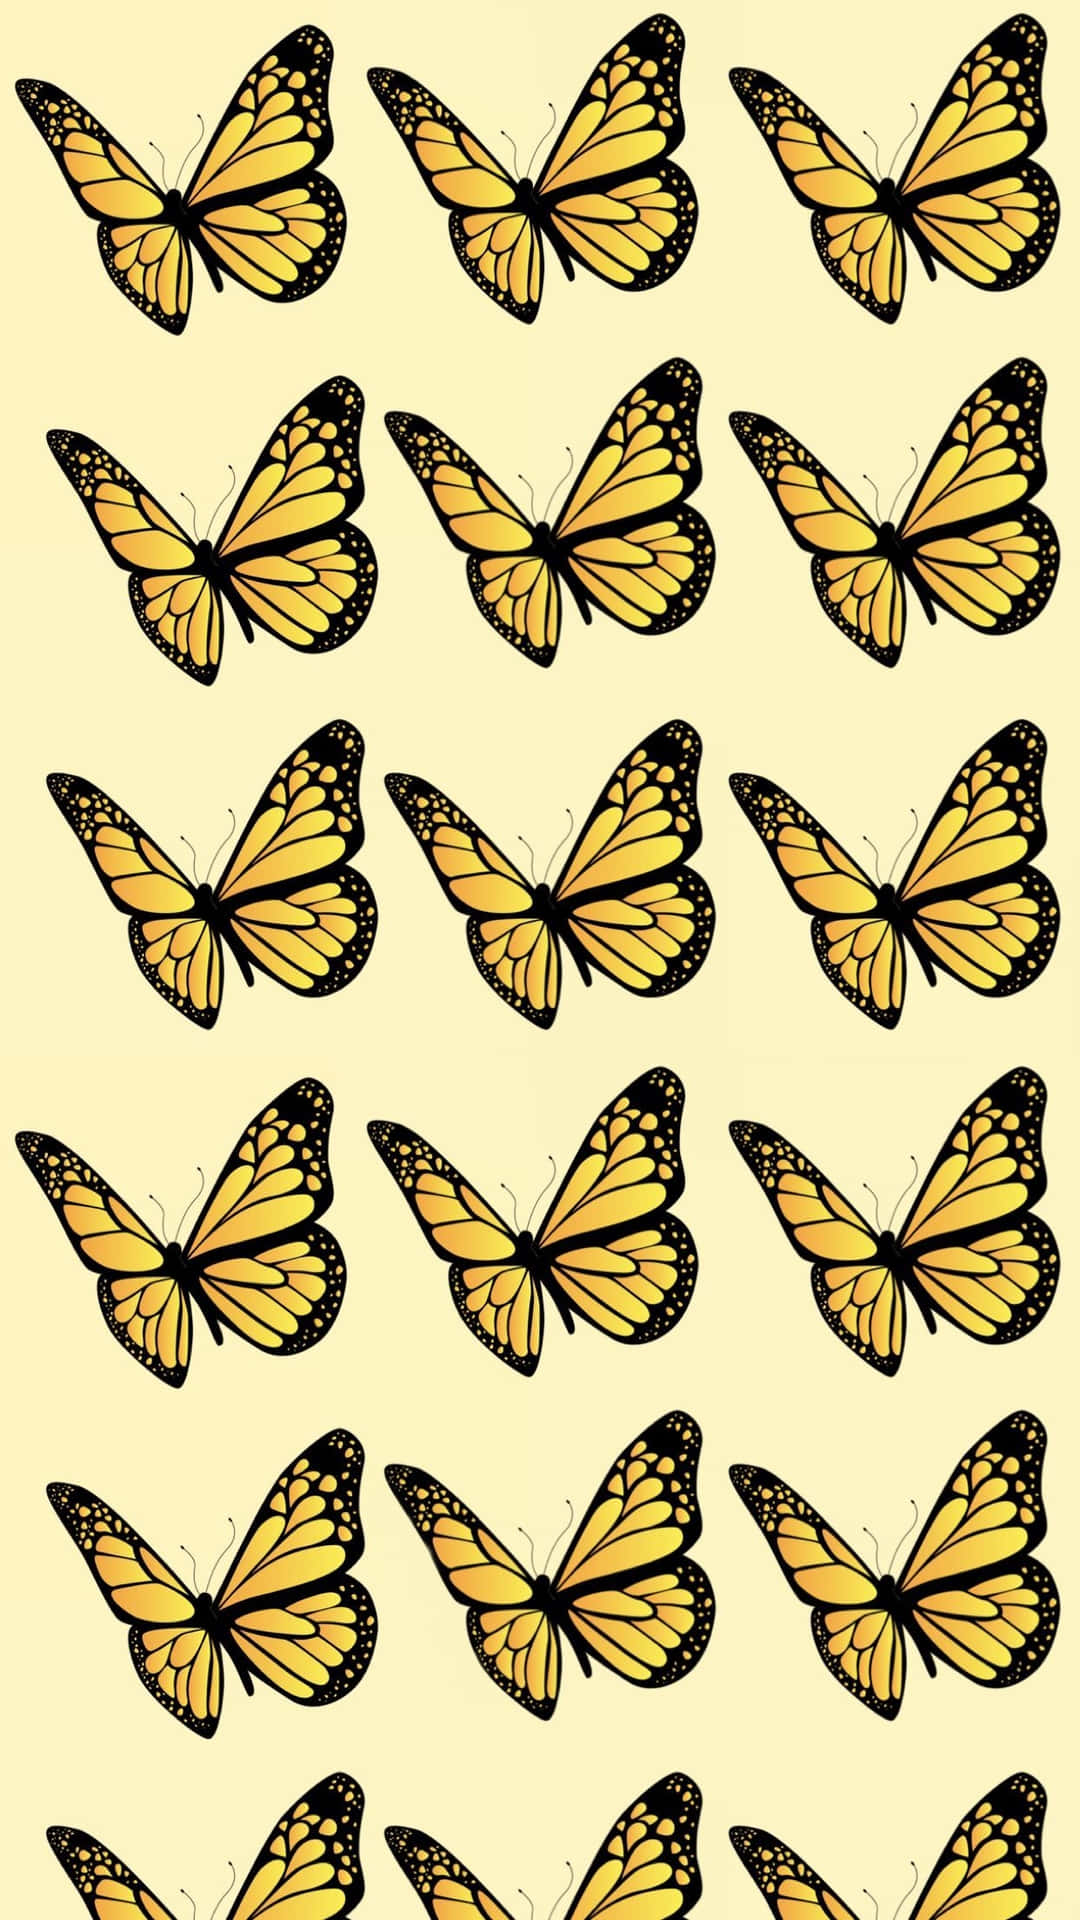 Admiring the beauty of a flock of Cute Yellow Butterflies Wallpaper